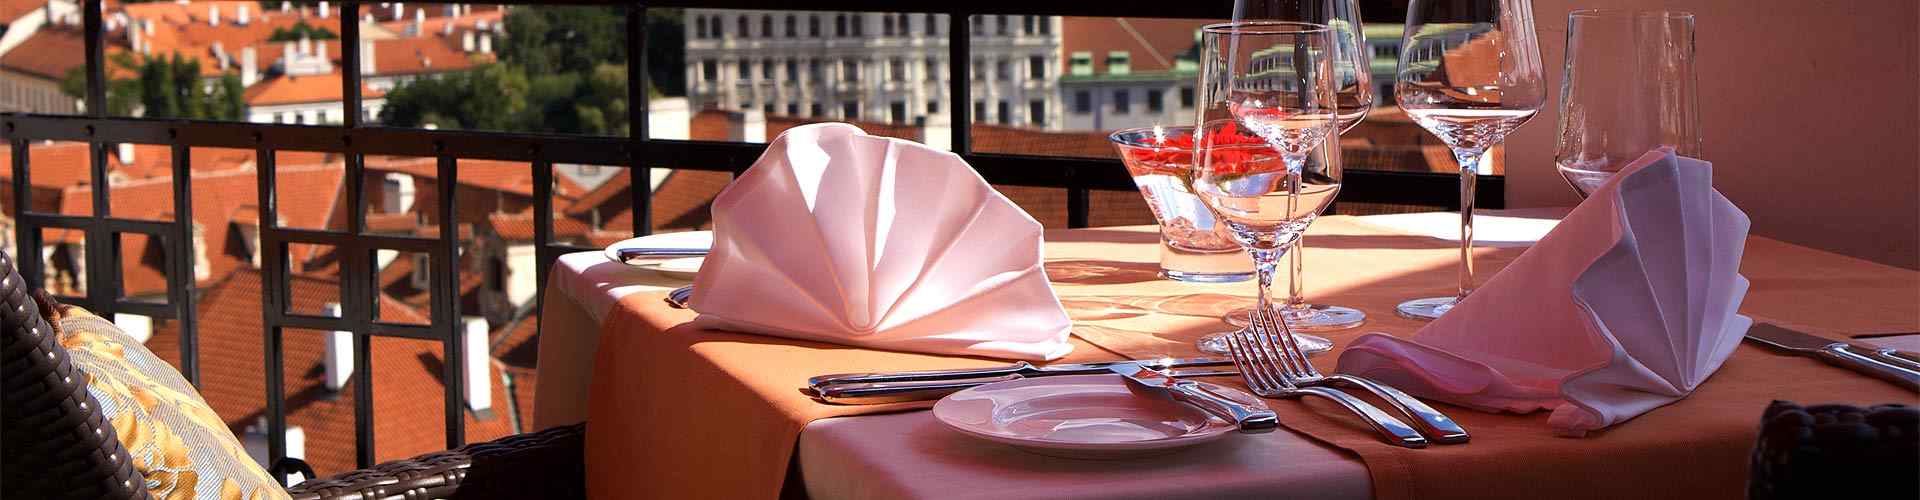 Restaurantes románticos con terraza en Tanos
          
          
